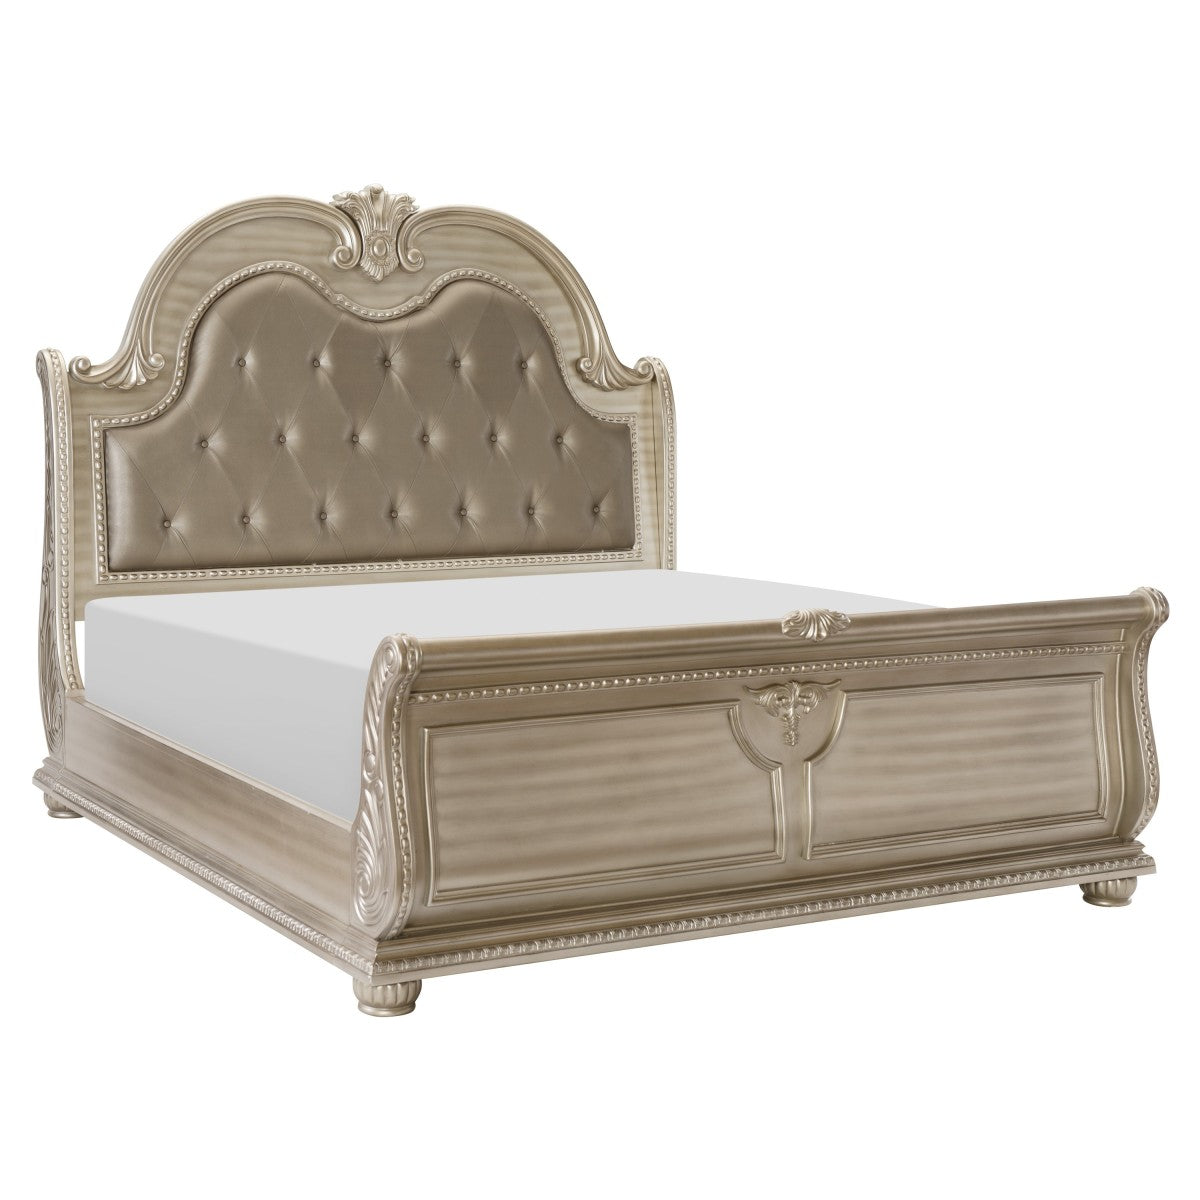 Cavalier Silver King Upholstered Sleigh Bed - SET | 1757SVK-1 | 1757SVK-2 | 1757SV-3 | 1757SV-1P - Bien Home Furniture &amp; Electronics